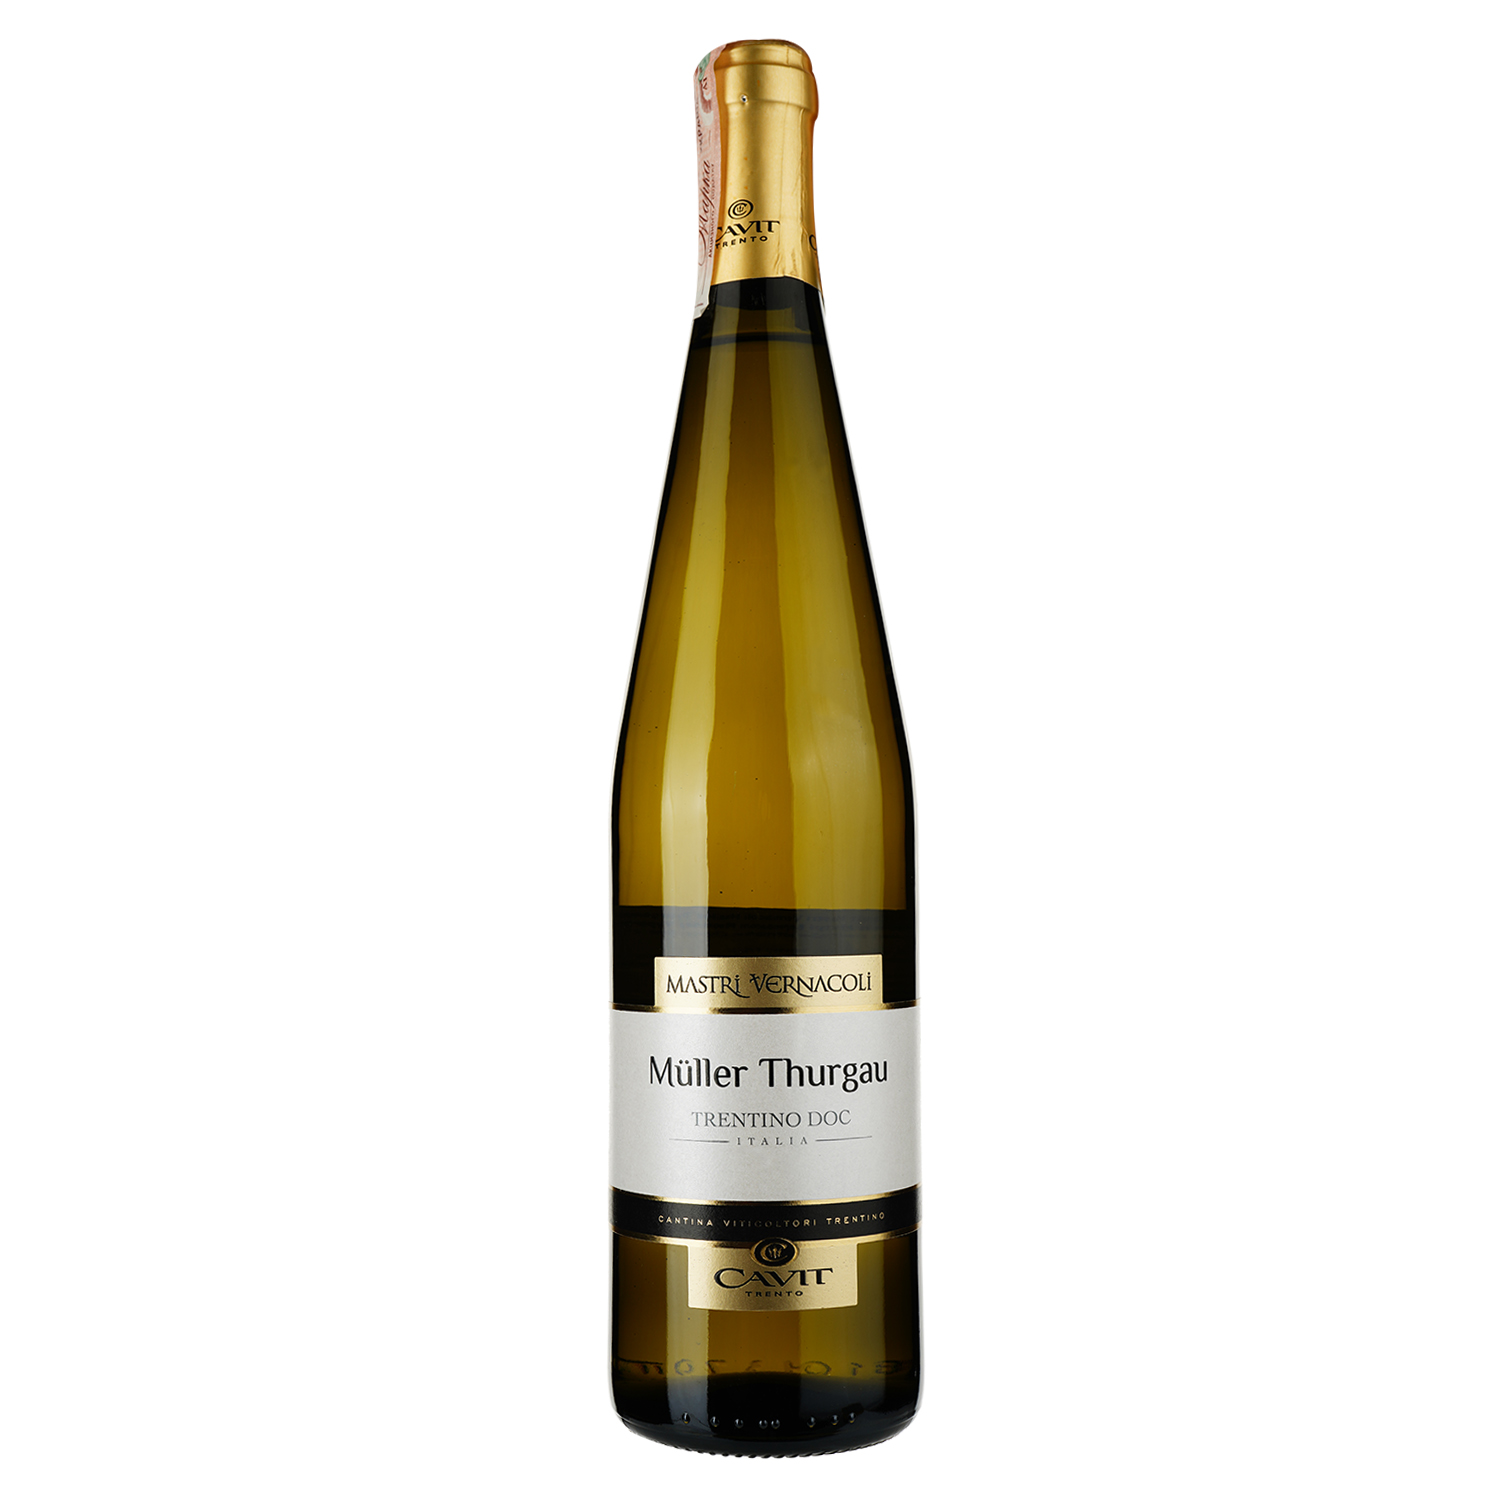 Вино Cavit Mastri Vernacoli Muller Thurgau, белое, сухое, 12%, 0,75 л - фото 1